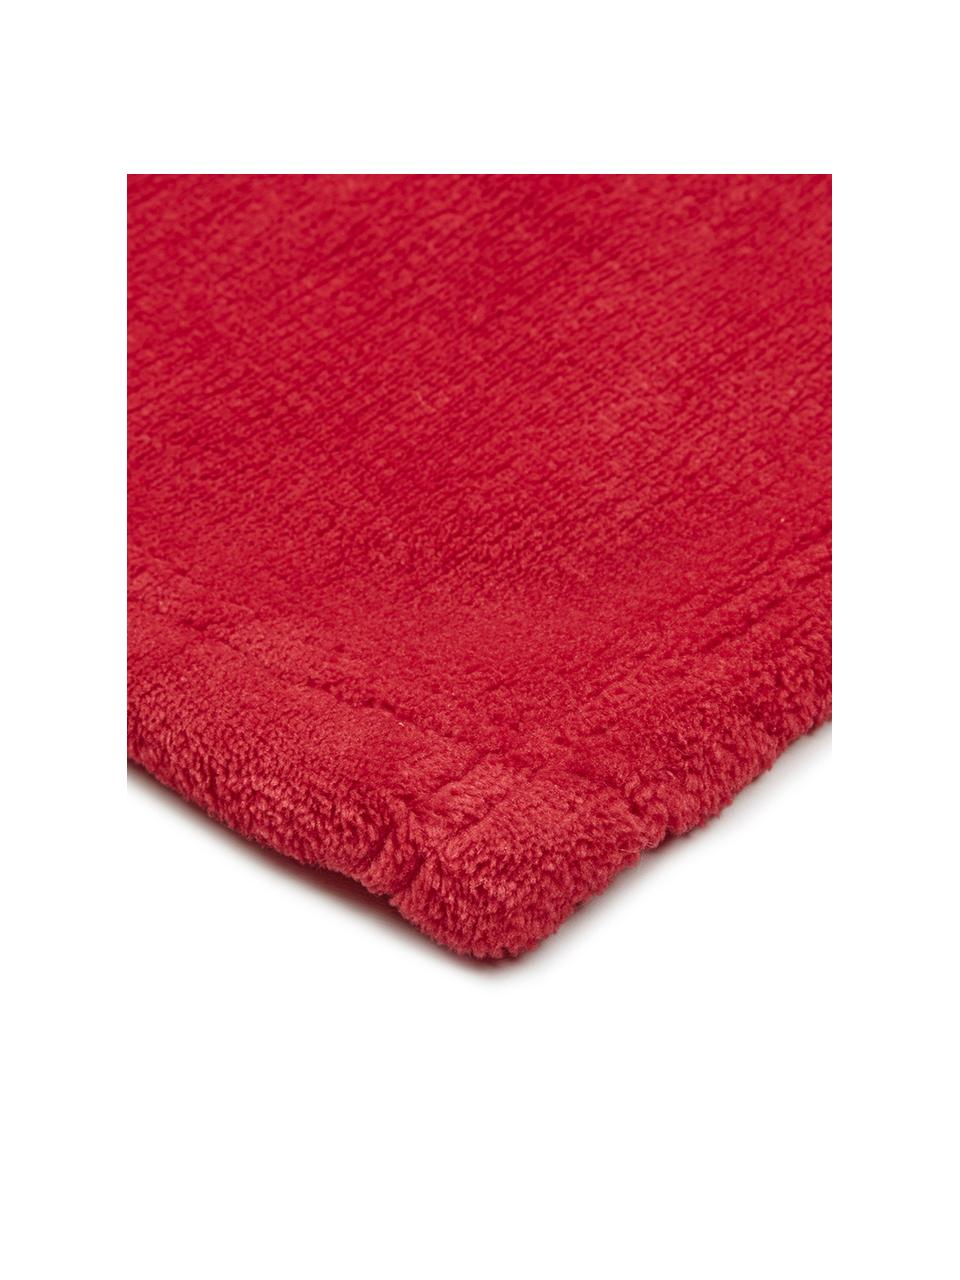 Miękki pled z polaru Doudou, Poliester, Czerwony, S 130 x D 160 cm